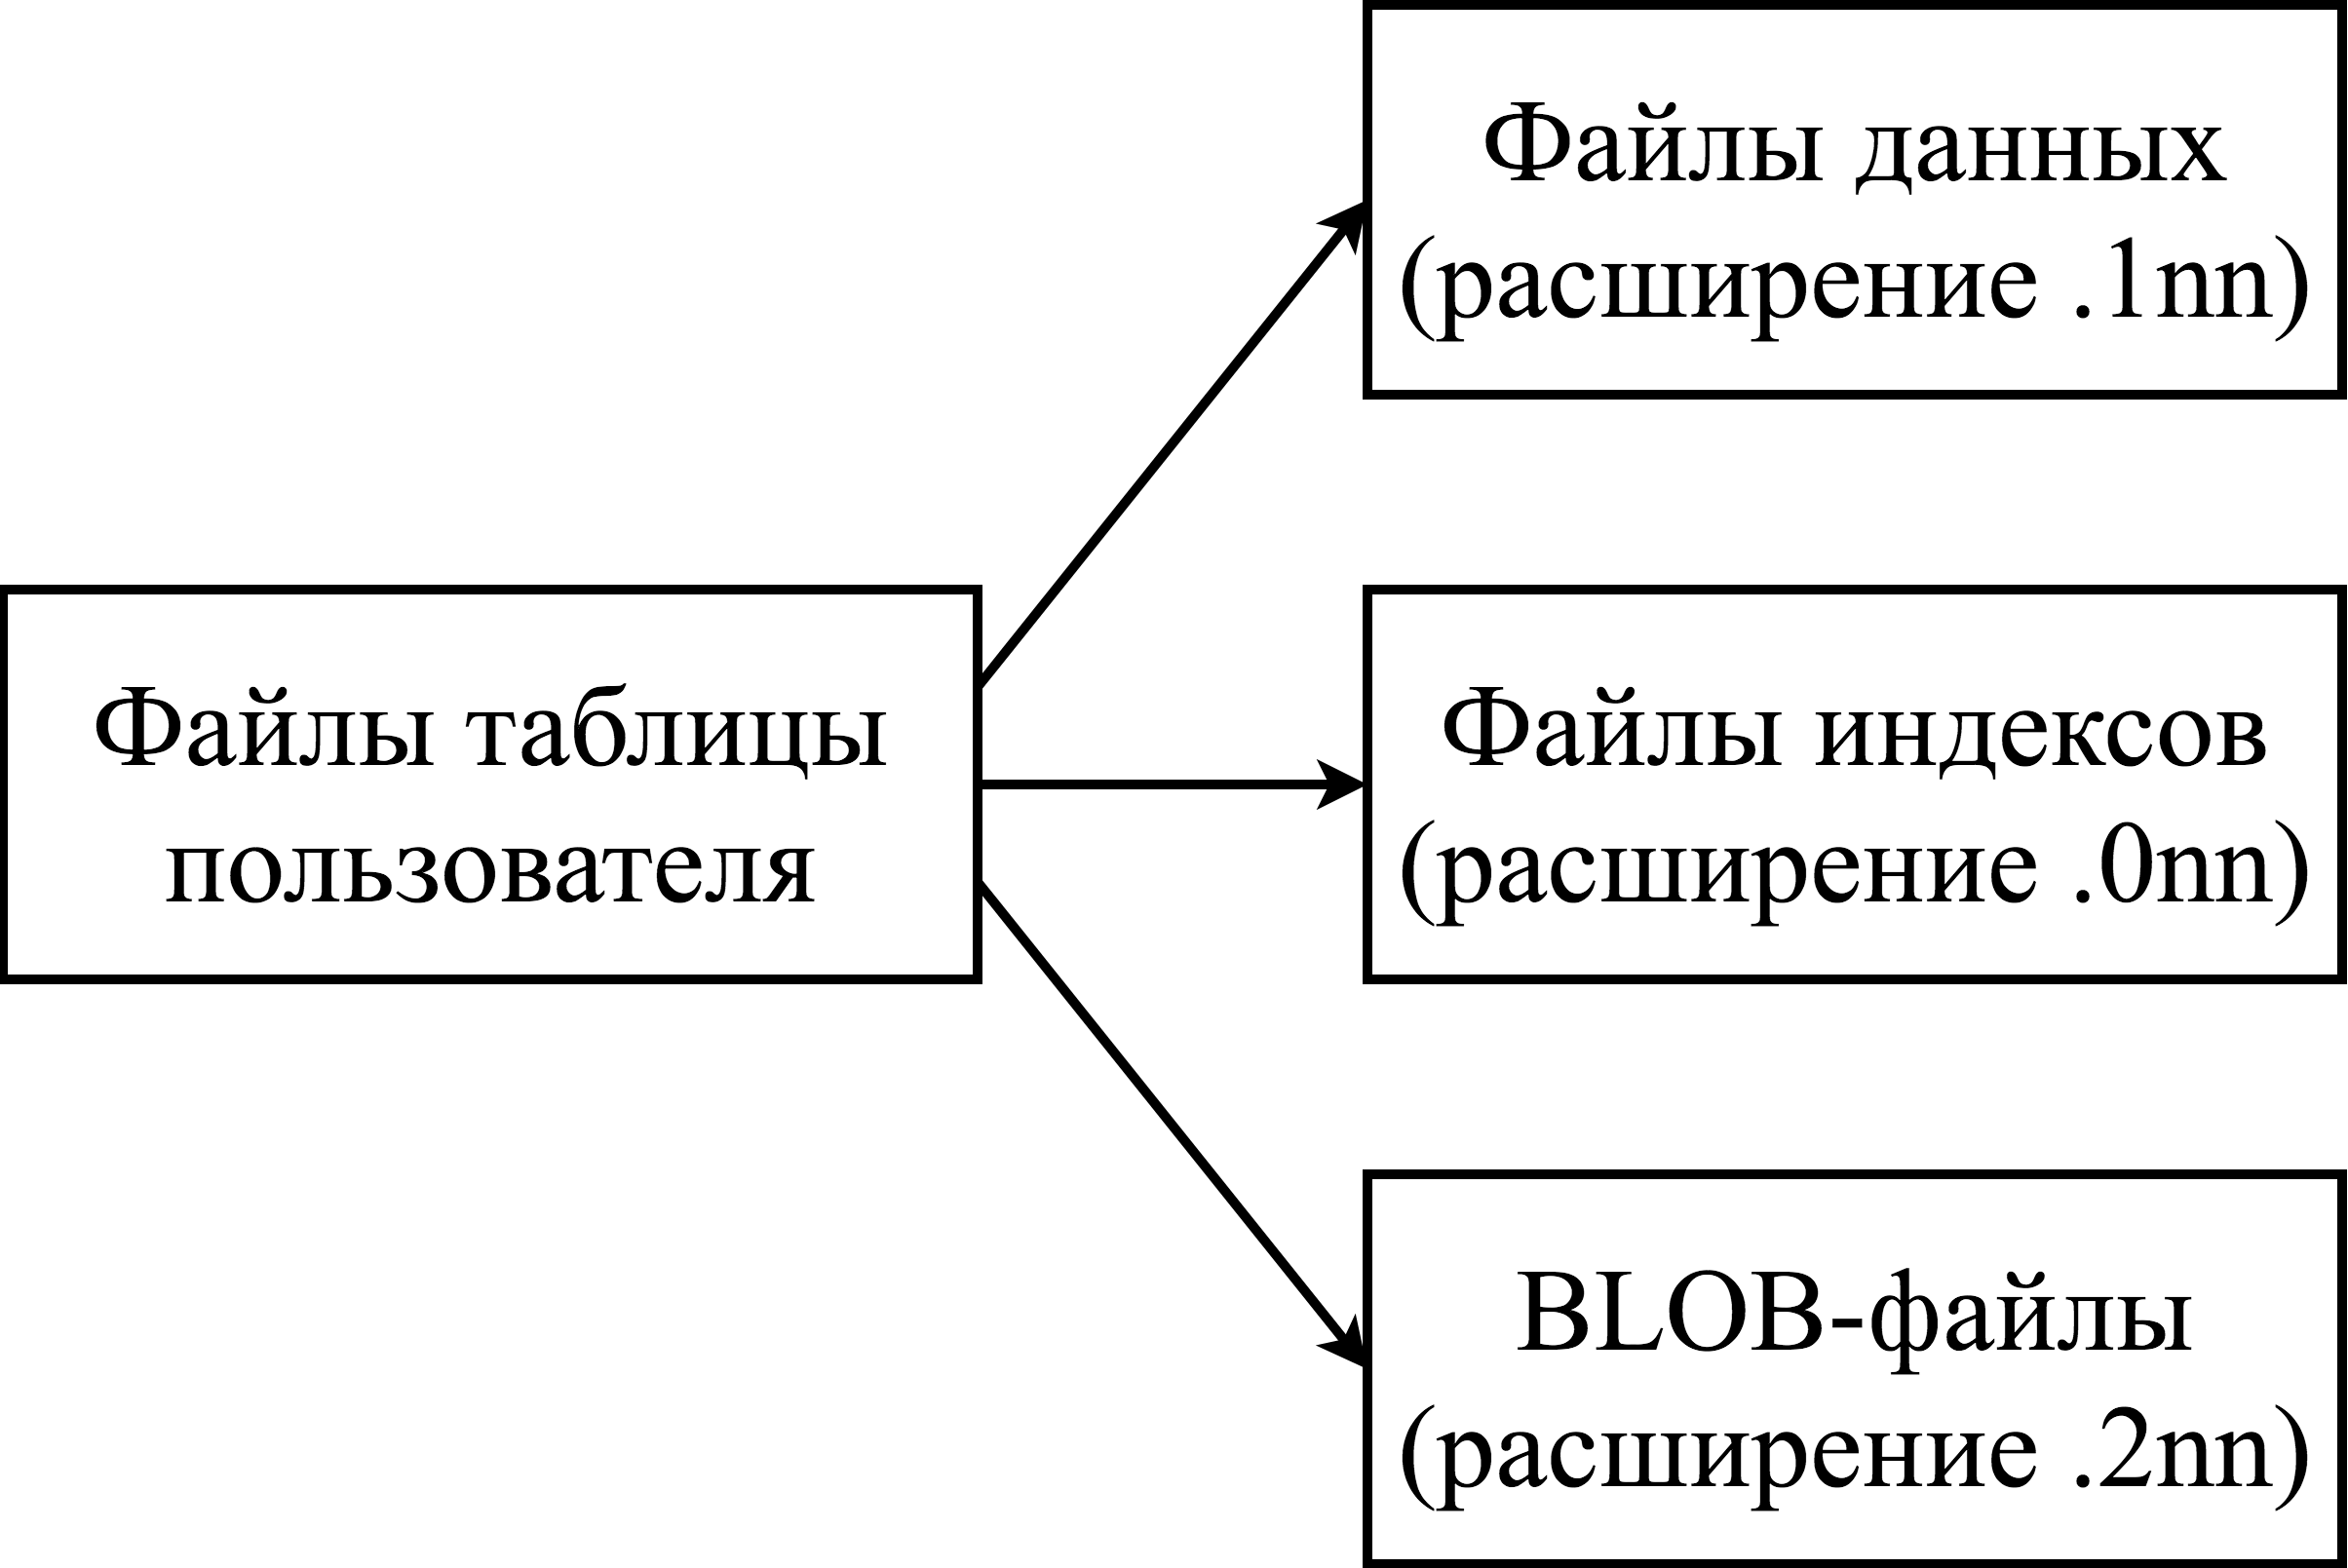 Физическая структура БД ЛИНТЕР